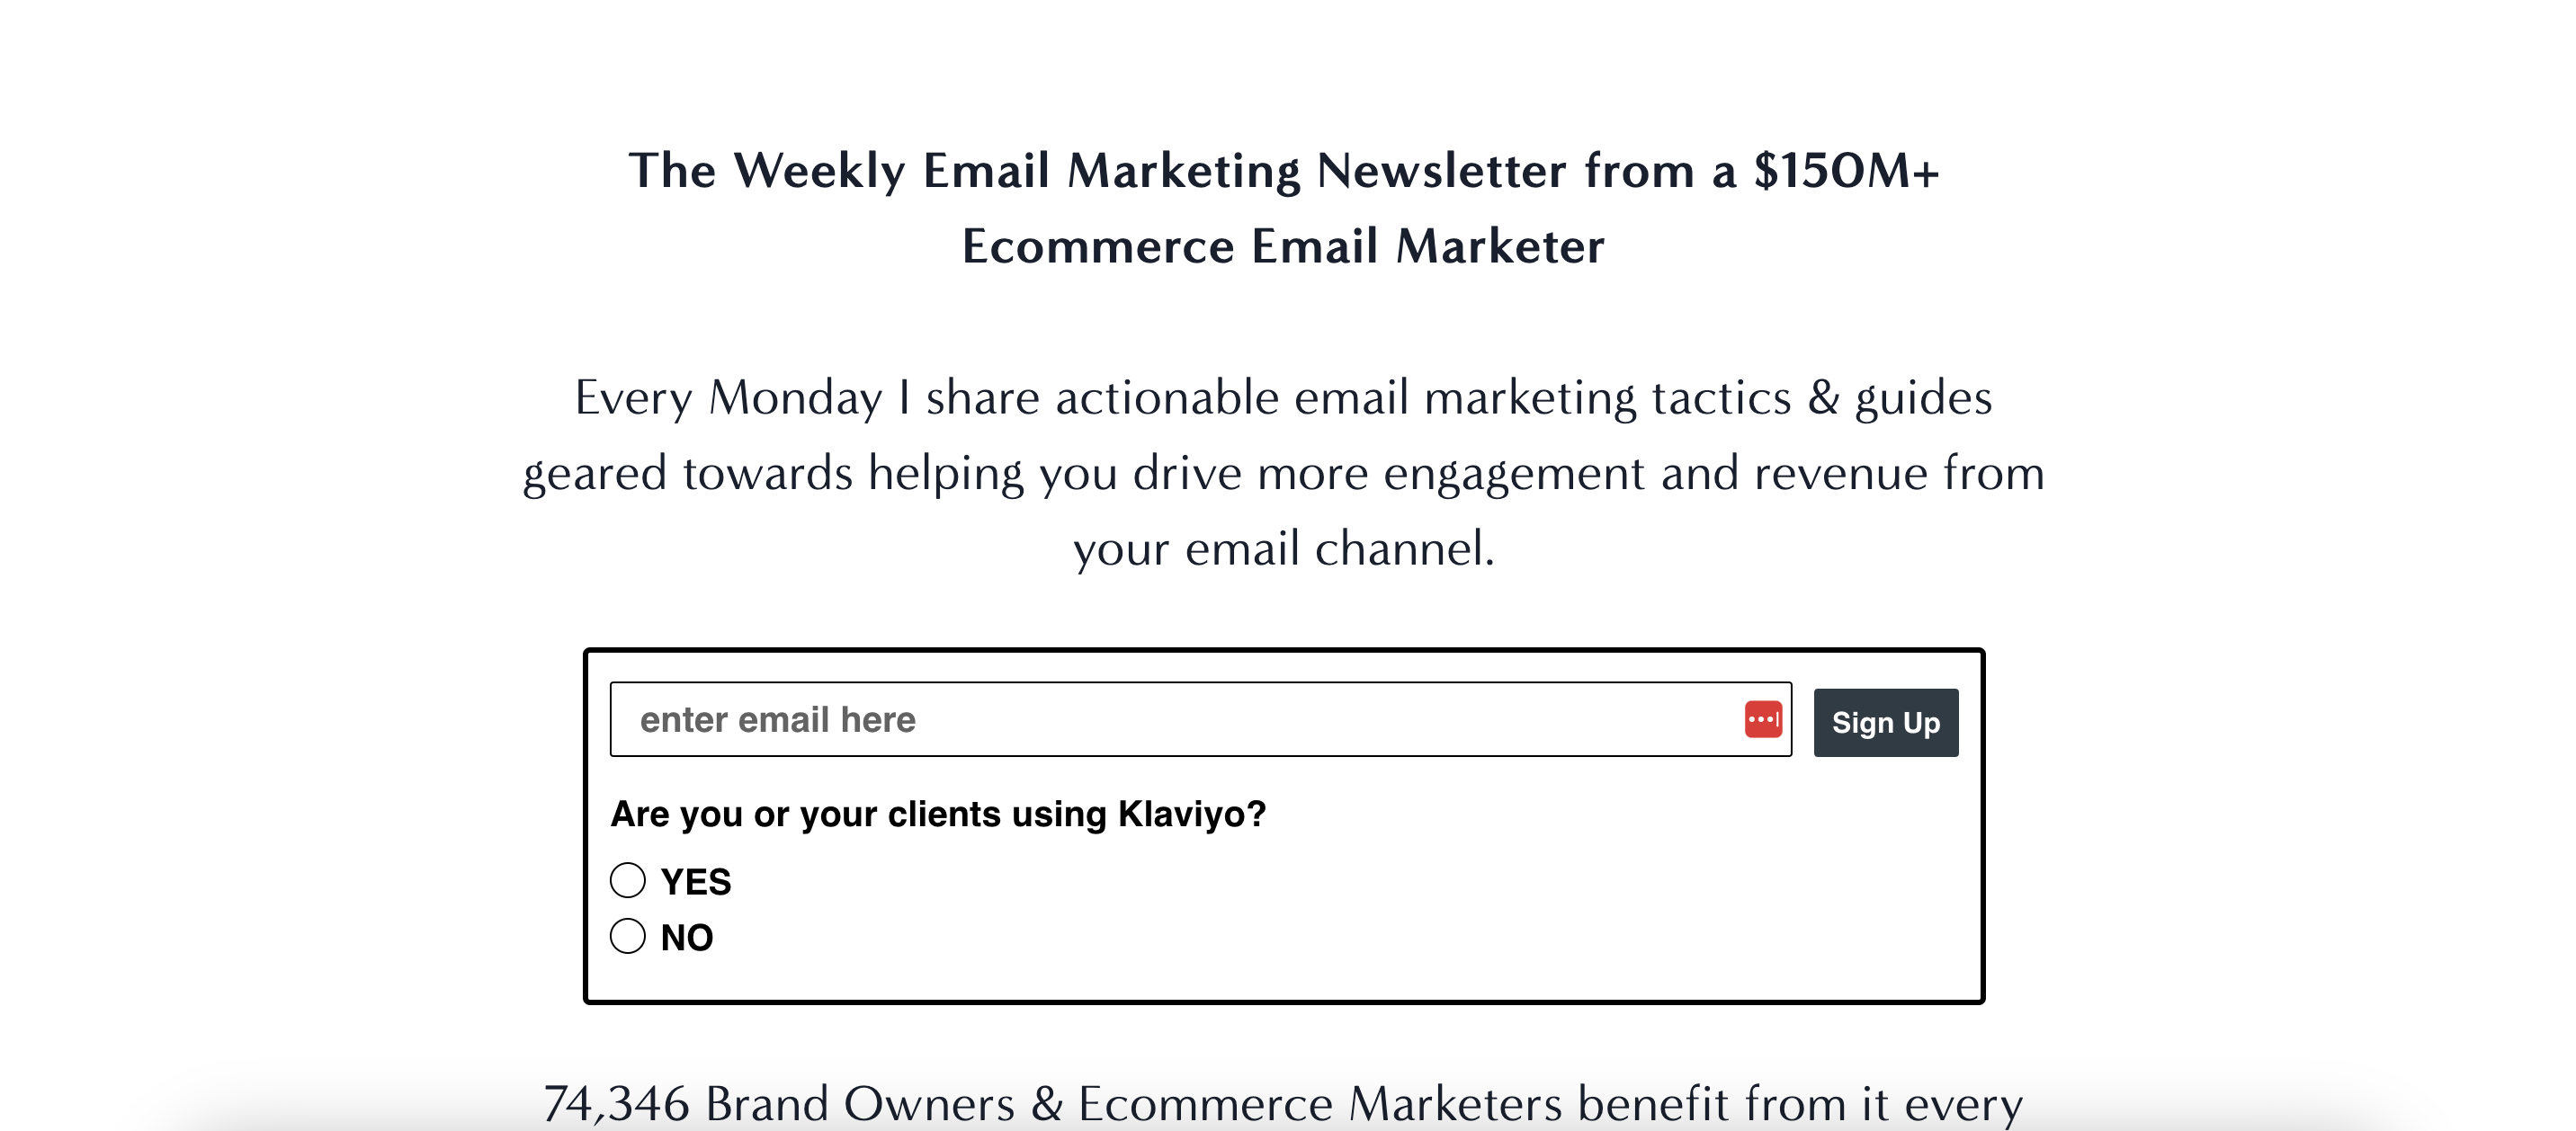 Chase Dimond のニュースレター: 専門的な電子メール マーケティングに関する洞察を毎週配信する電子メールです